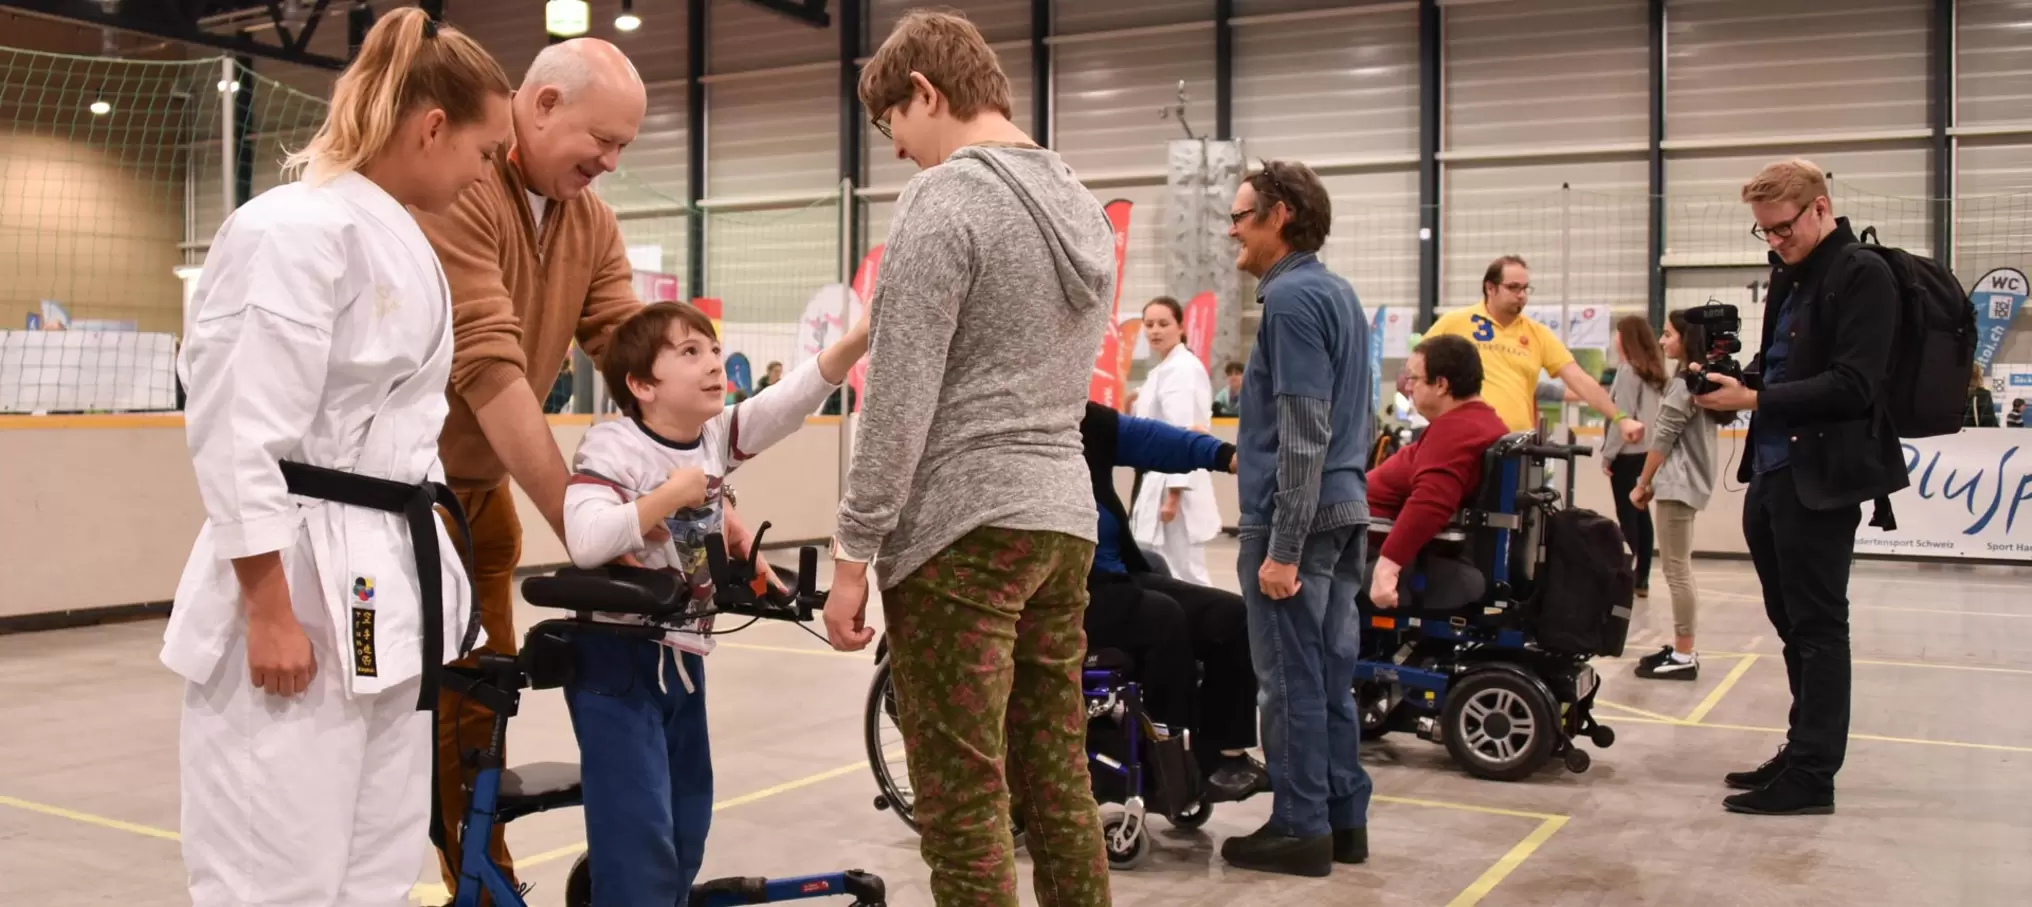 In occasione di eventi come la Fiera Swiss Handicap, le persone con e senza disabilità si riuniscono